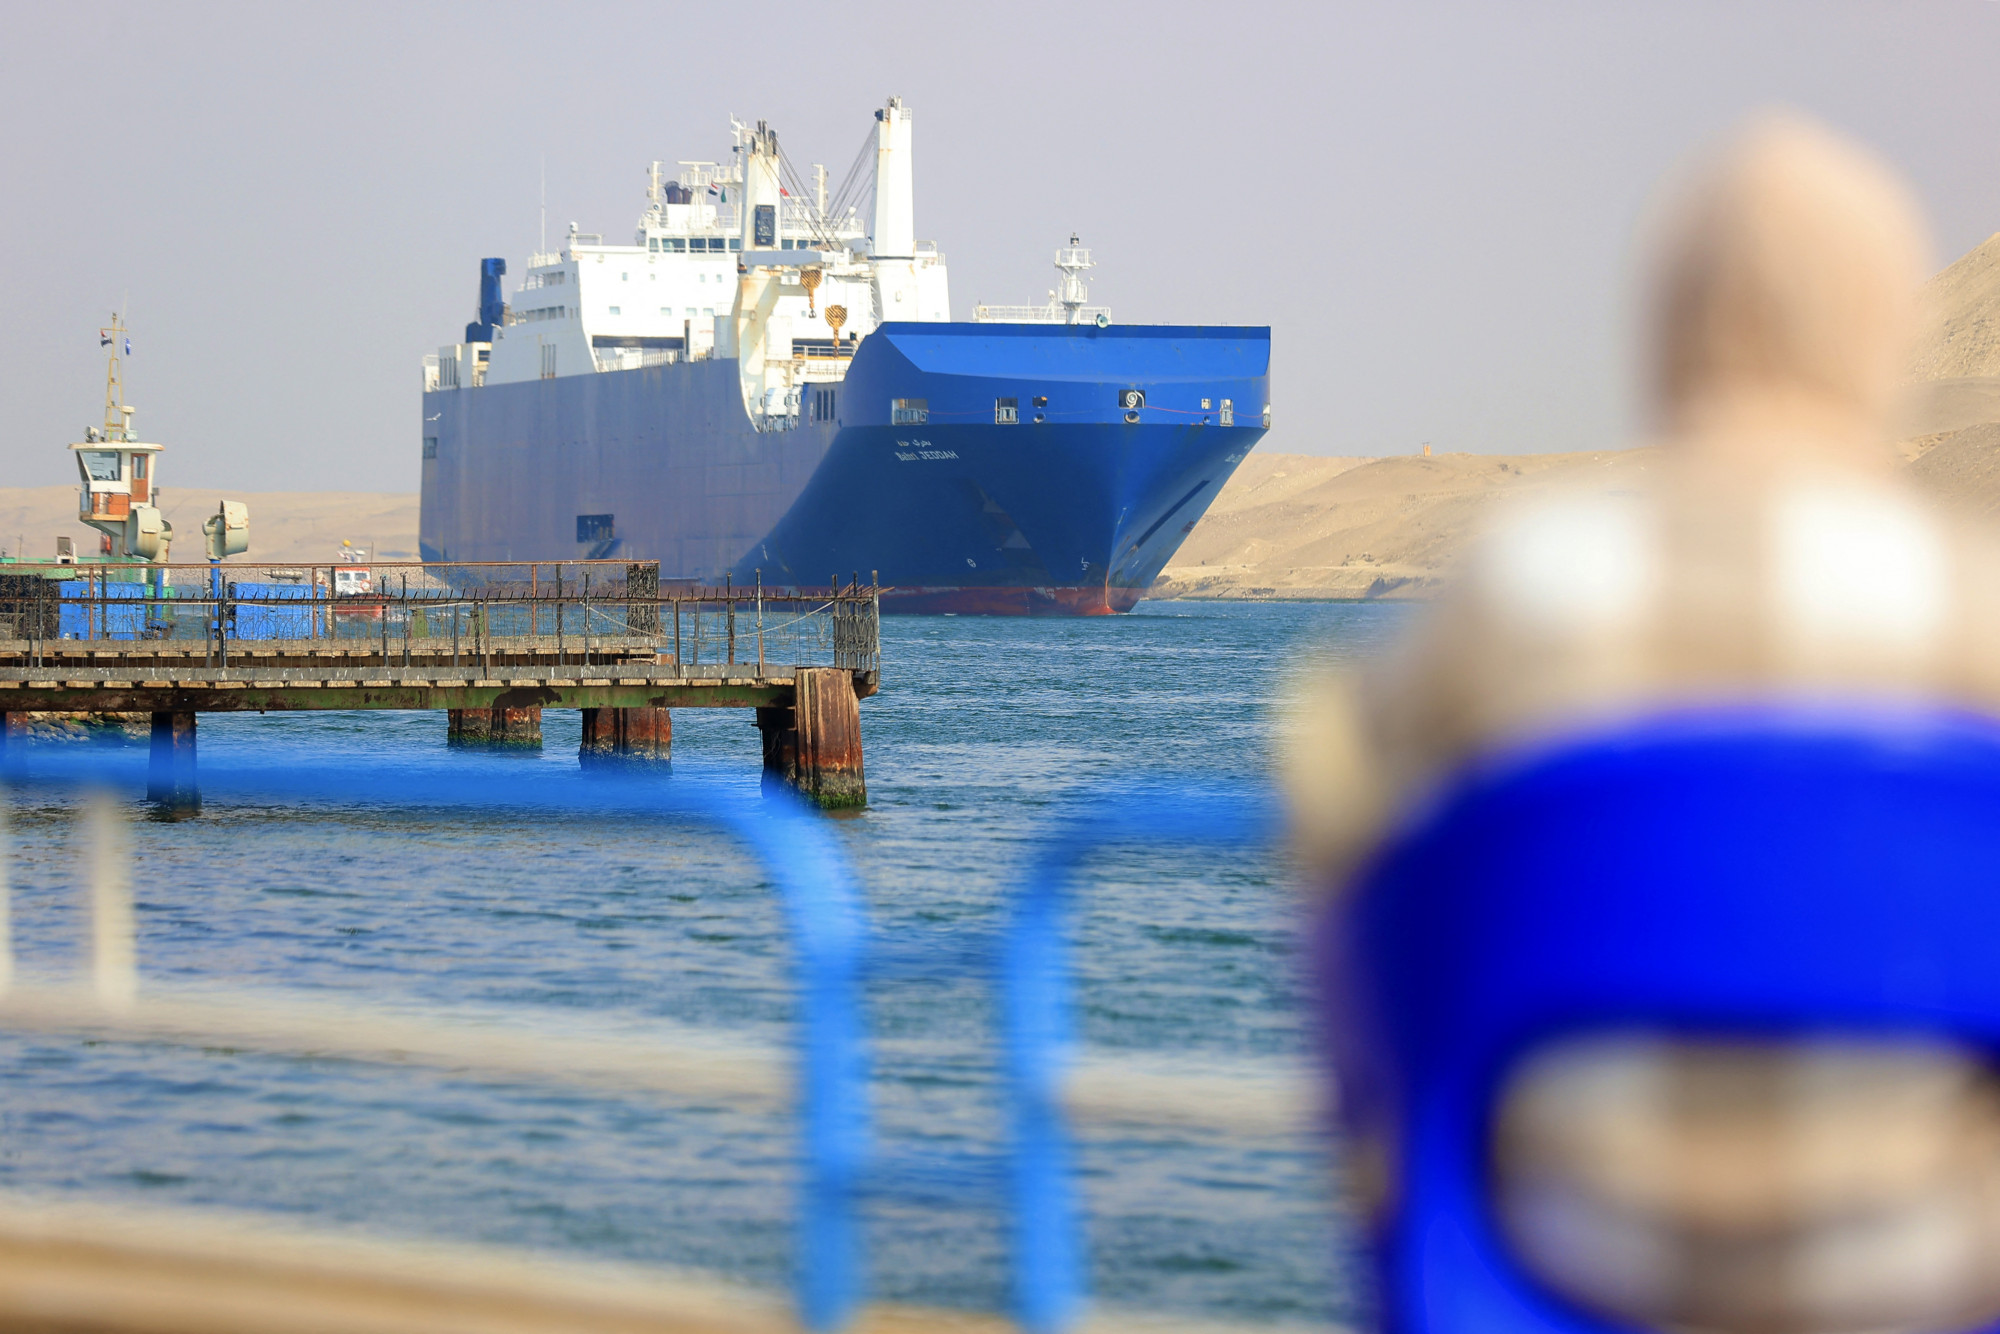 A vörös-tengeri helyzet még nem az armageddon, de a világkereskedelem fontos problémájára világít rá